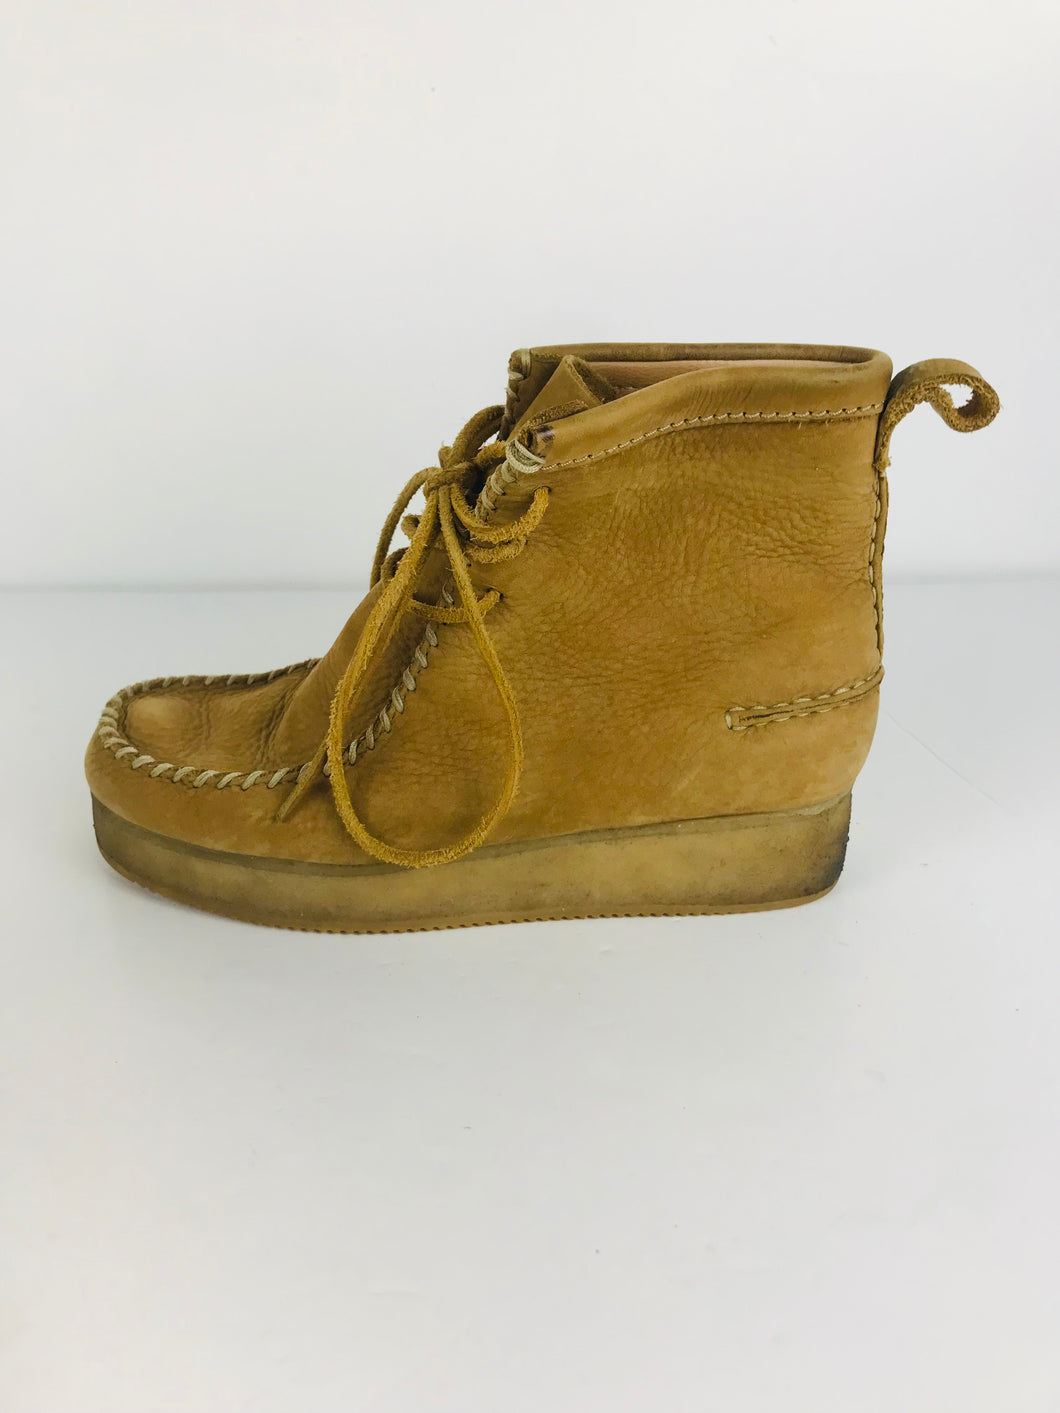 Clarks Originals Women's Suede Ankle Boots | UK7 | Brown